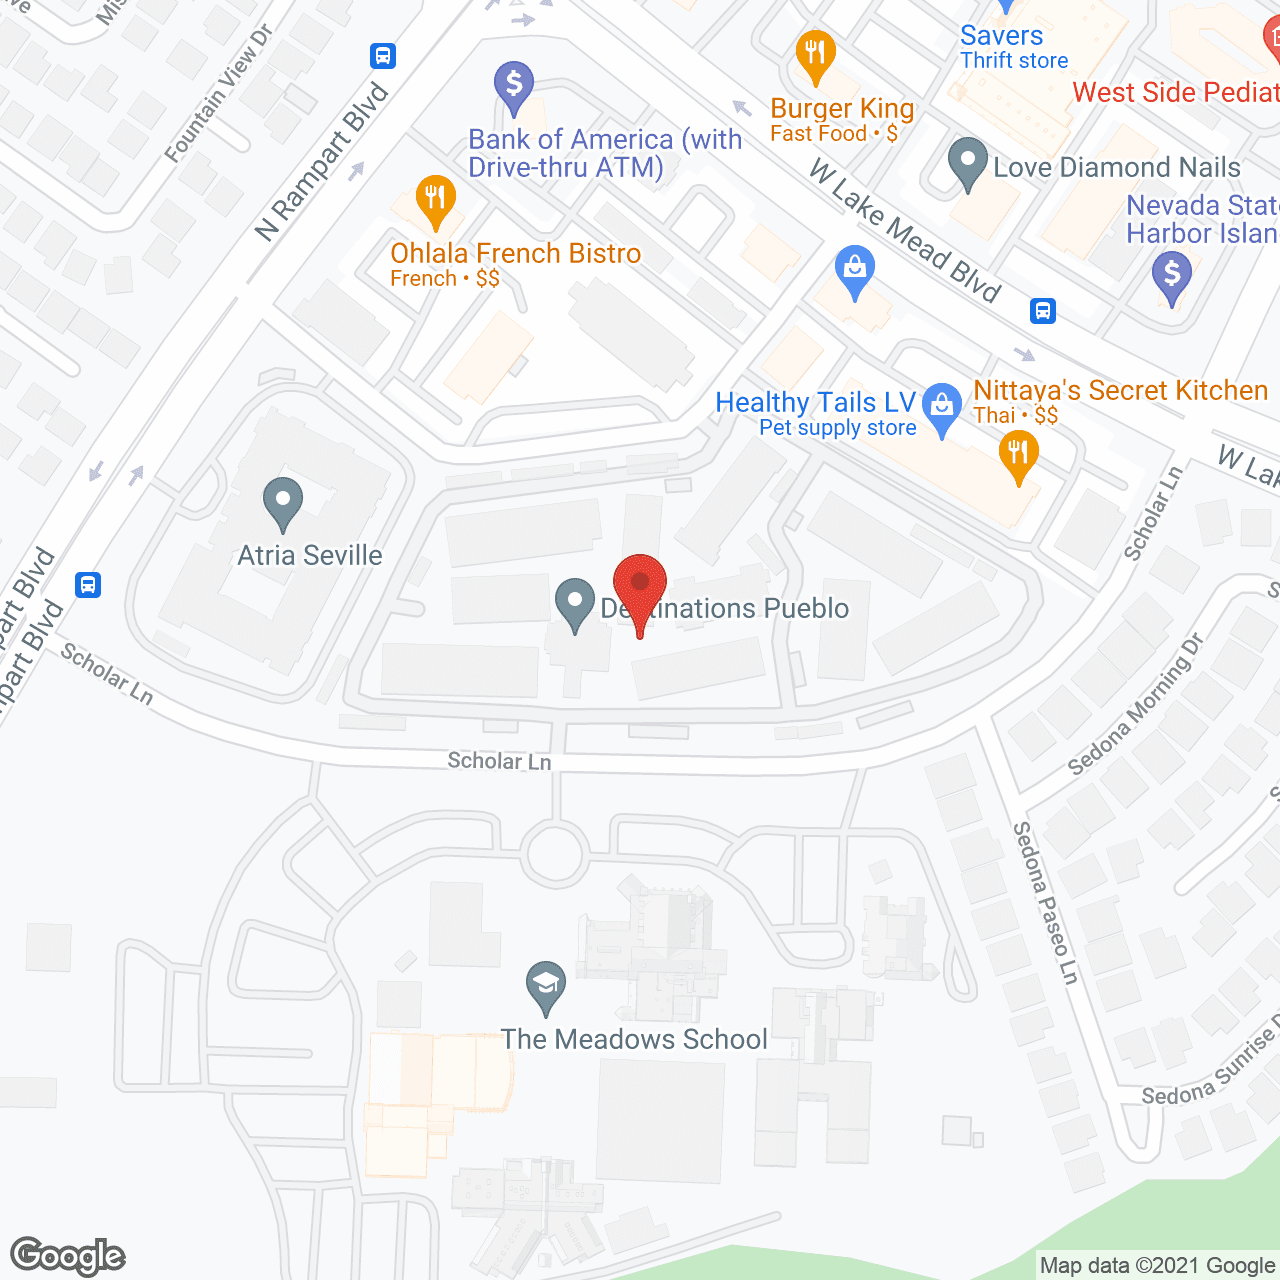 Destinations Pueblo in google map